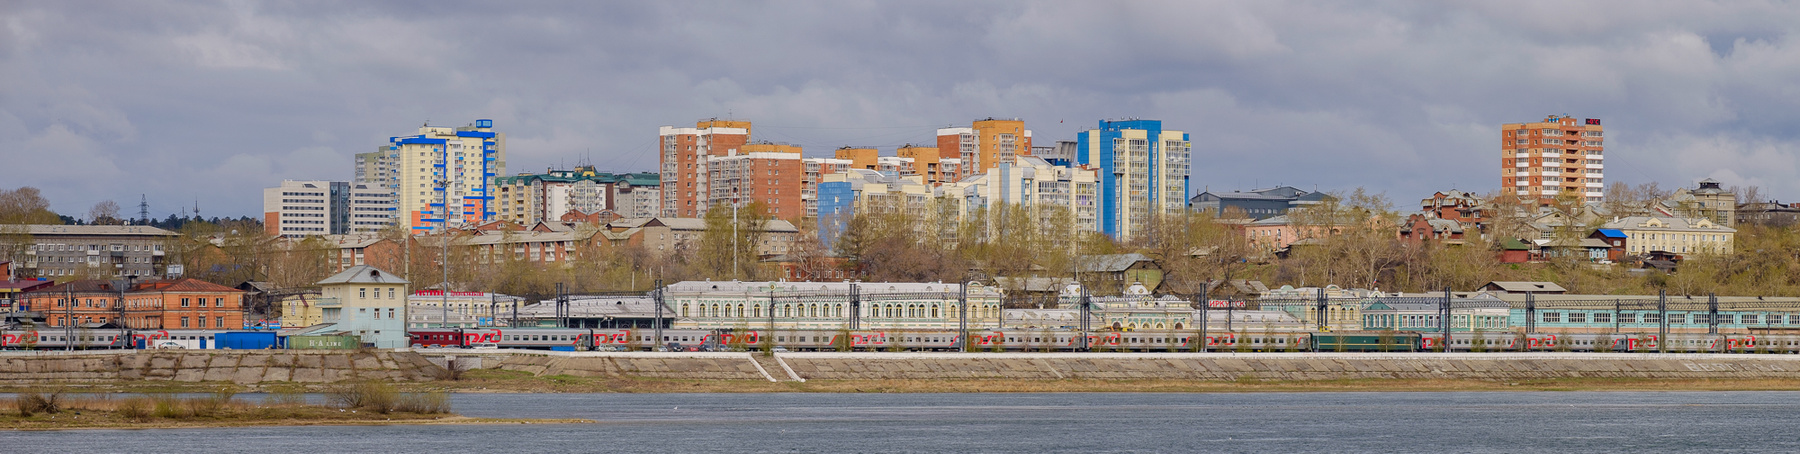 Иркутский вокзал 